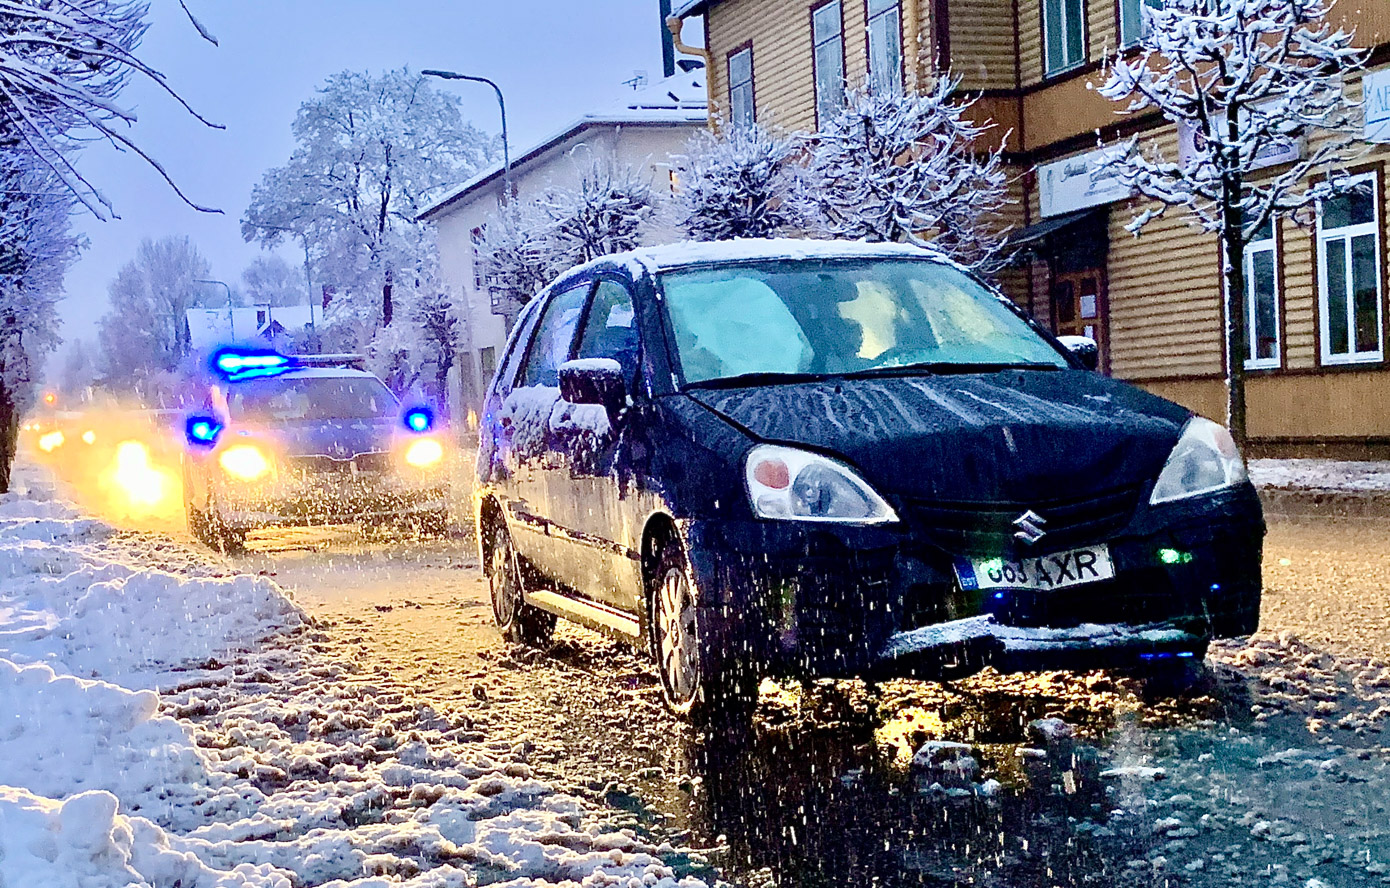 „25. detsembril kella kolmveerand kolme paiku laekus politseile teade Võru linnas Jüri-Petseri ristmiku juures toimunud liiklusõnnetusest.  Sõiduautot Volkswagen juhtinud 37-aastane mees peatus reguleeritud ülekäiguraja ees, et anda teed ülekäigurada ületavale emale ja lapsele. Samal ajal sõitis Volkswagenile tagant otsa sõiduautot Suzuki juhtinud 59-aastane naine, mille tagajärjel paiskus Volkswagen otsa ülekäigurada ületavale lapsele. Kiirabi toimetas lapse tervisekontrolliks haiglasse, kus tal vigastusi ei tuvastatud. Mõlemad sõiduki juhid omasid vastav kategooria juhtimisõigust ning olid kained."